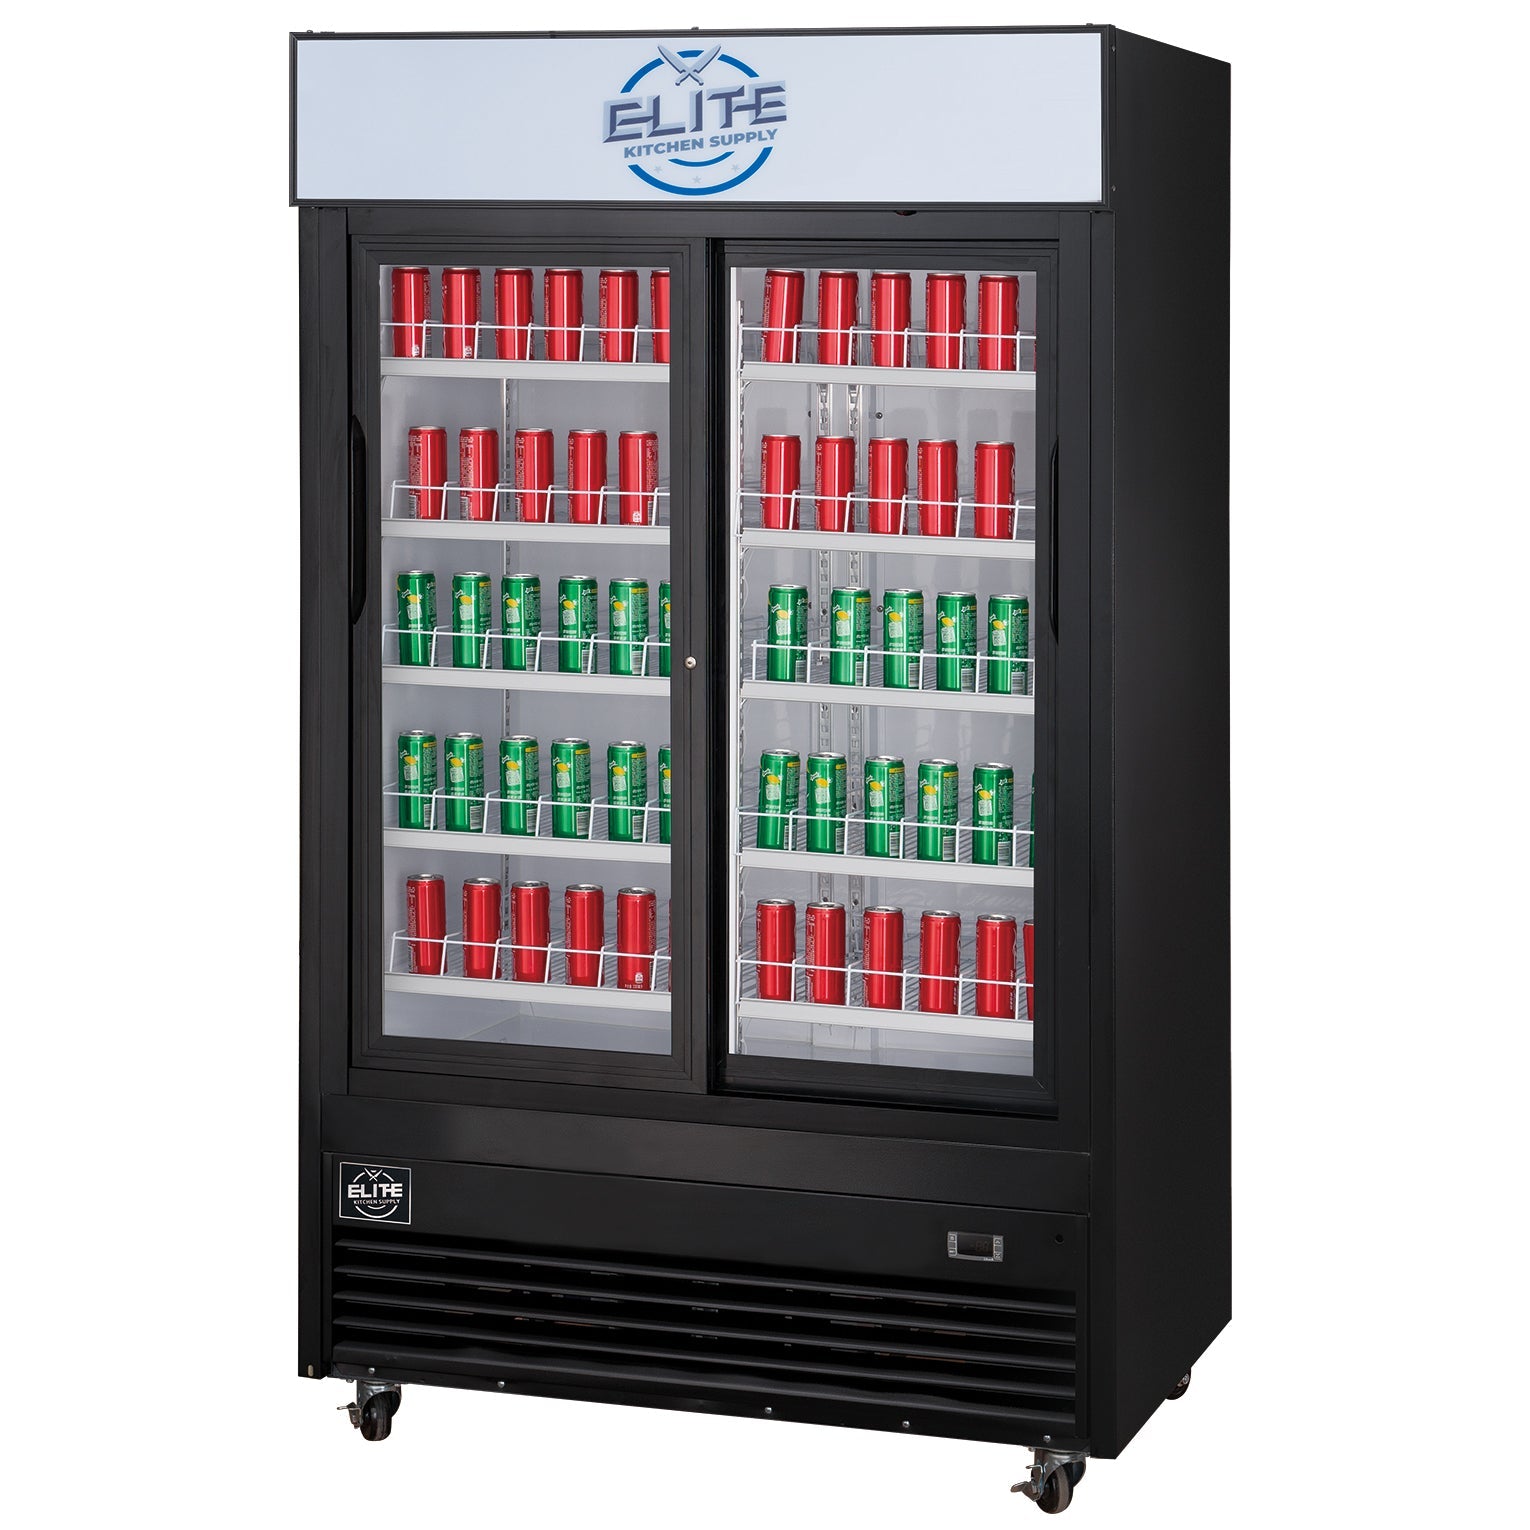 ESM-41SR 2-Door Merchandiser Refrigerator